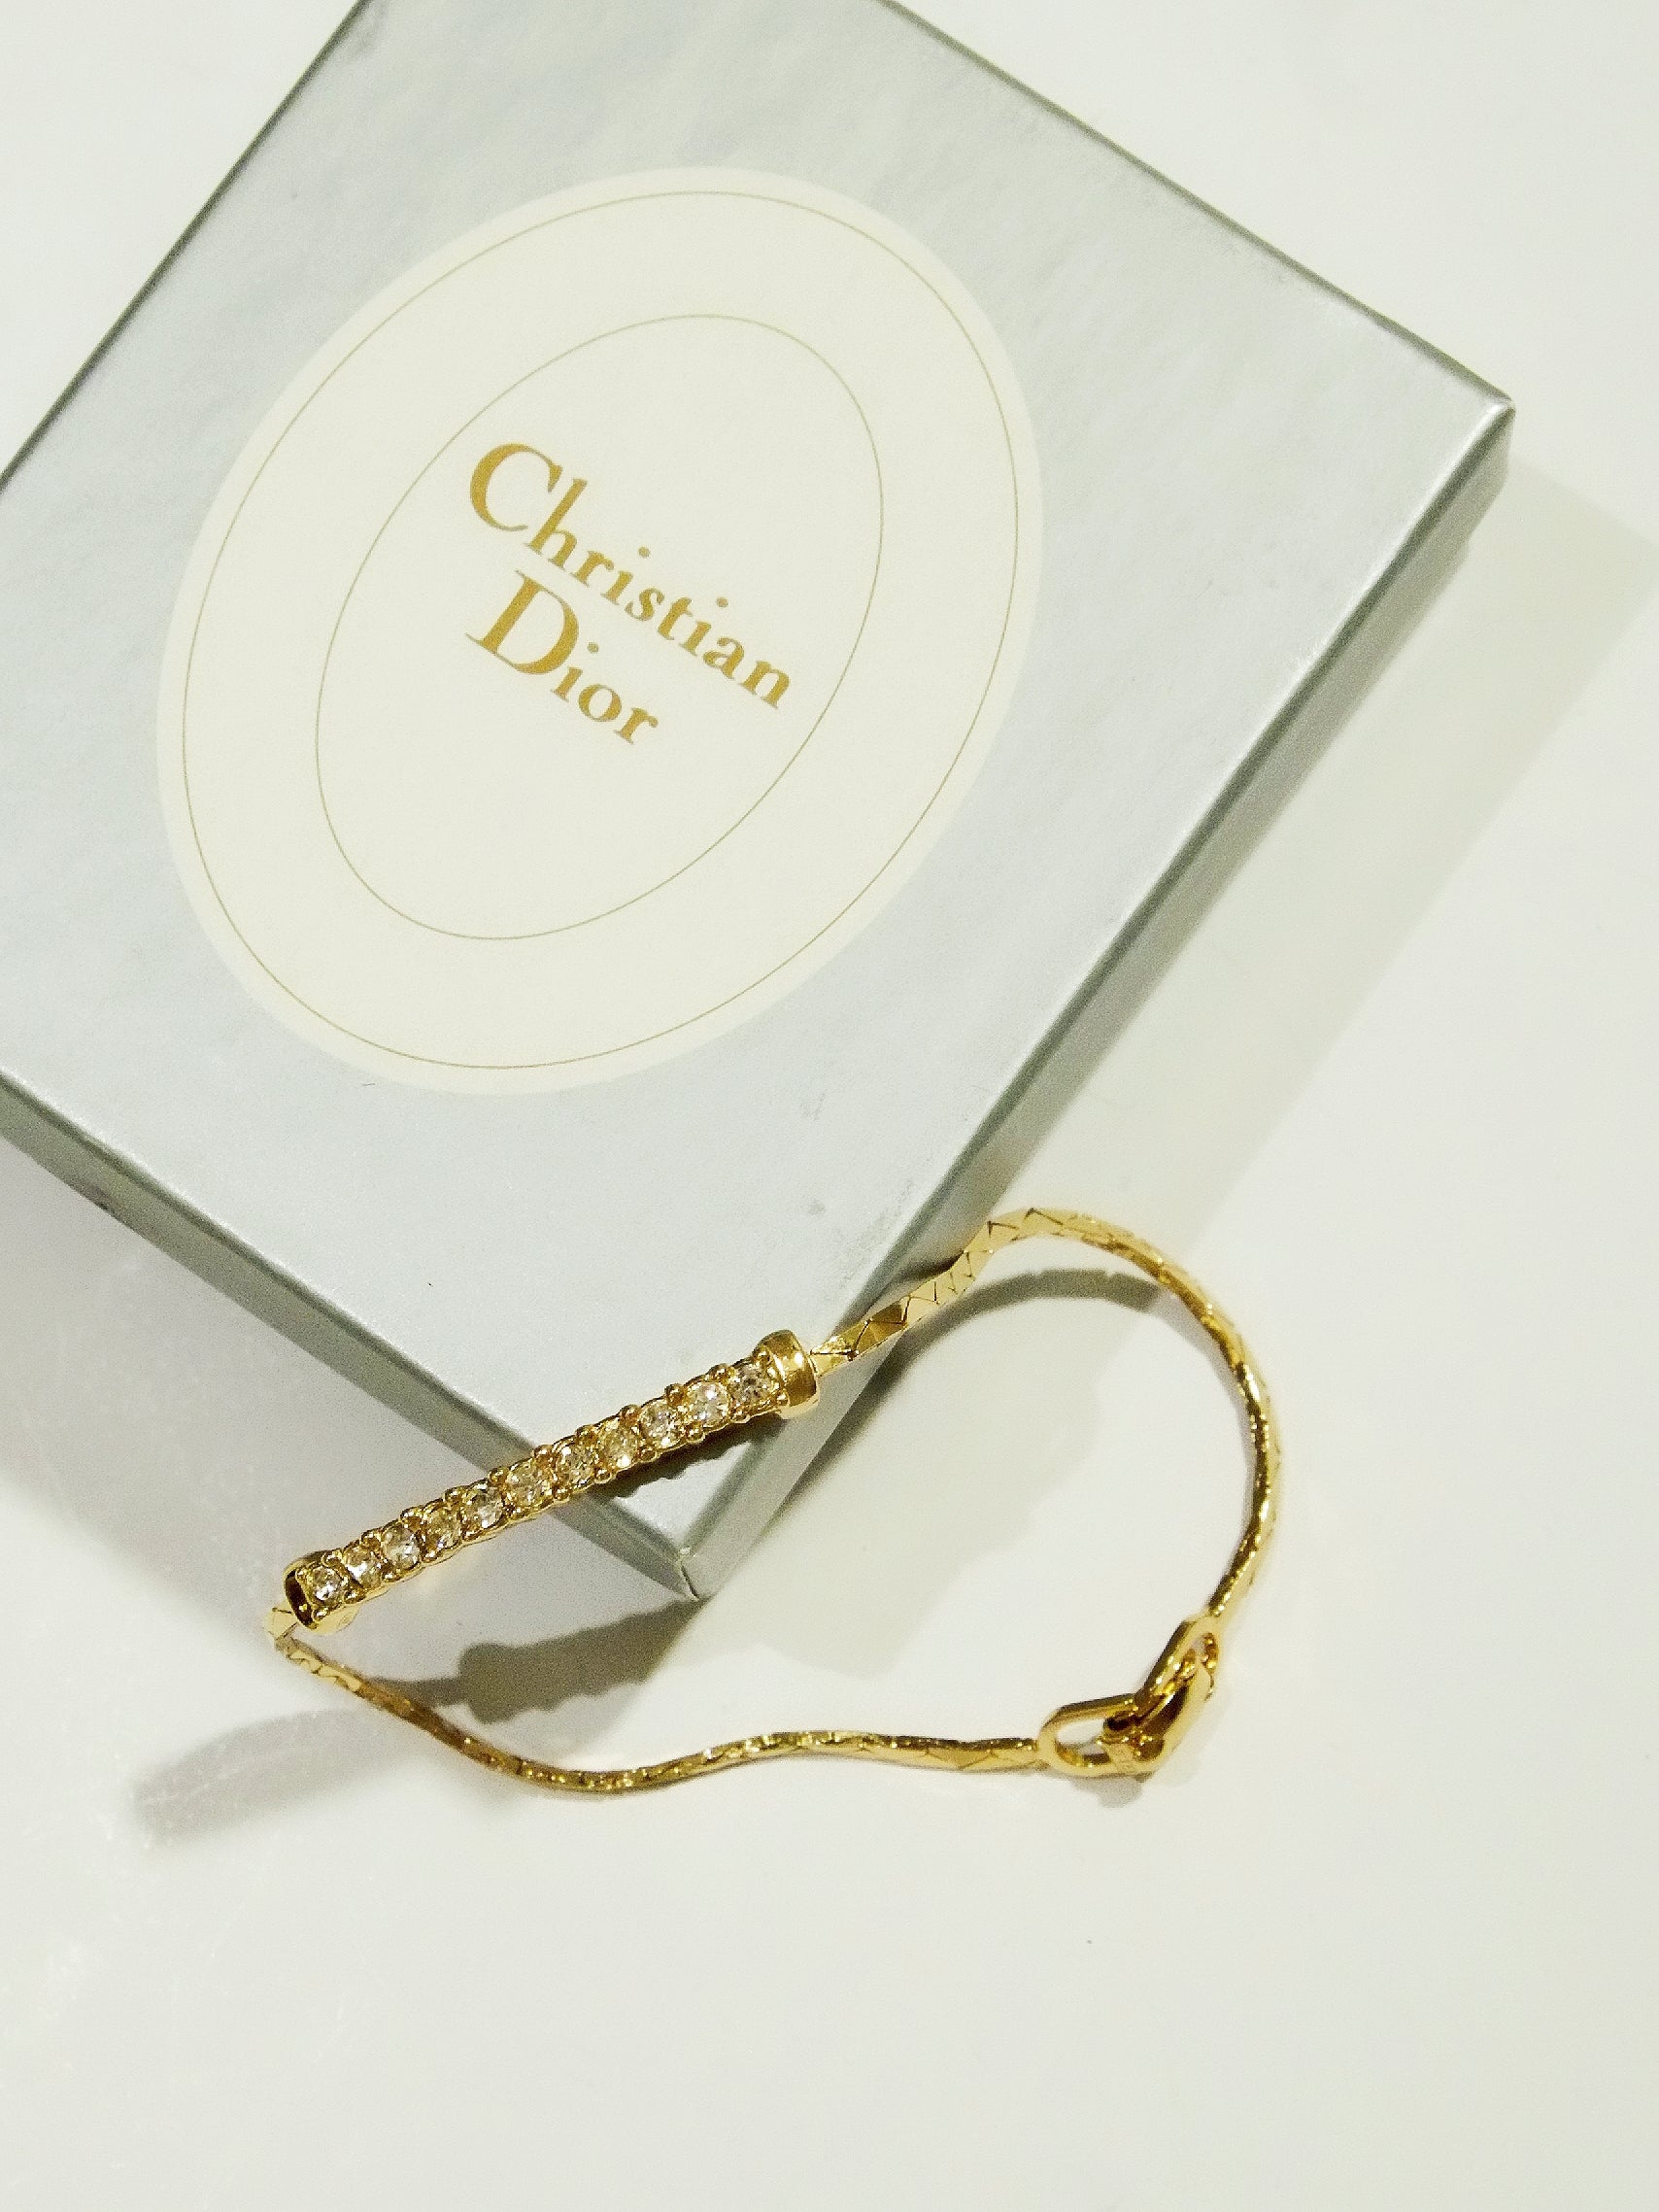 Vintage Christian Dior Gold Tone Necklace and Bracelet Set